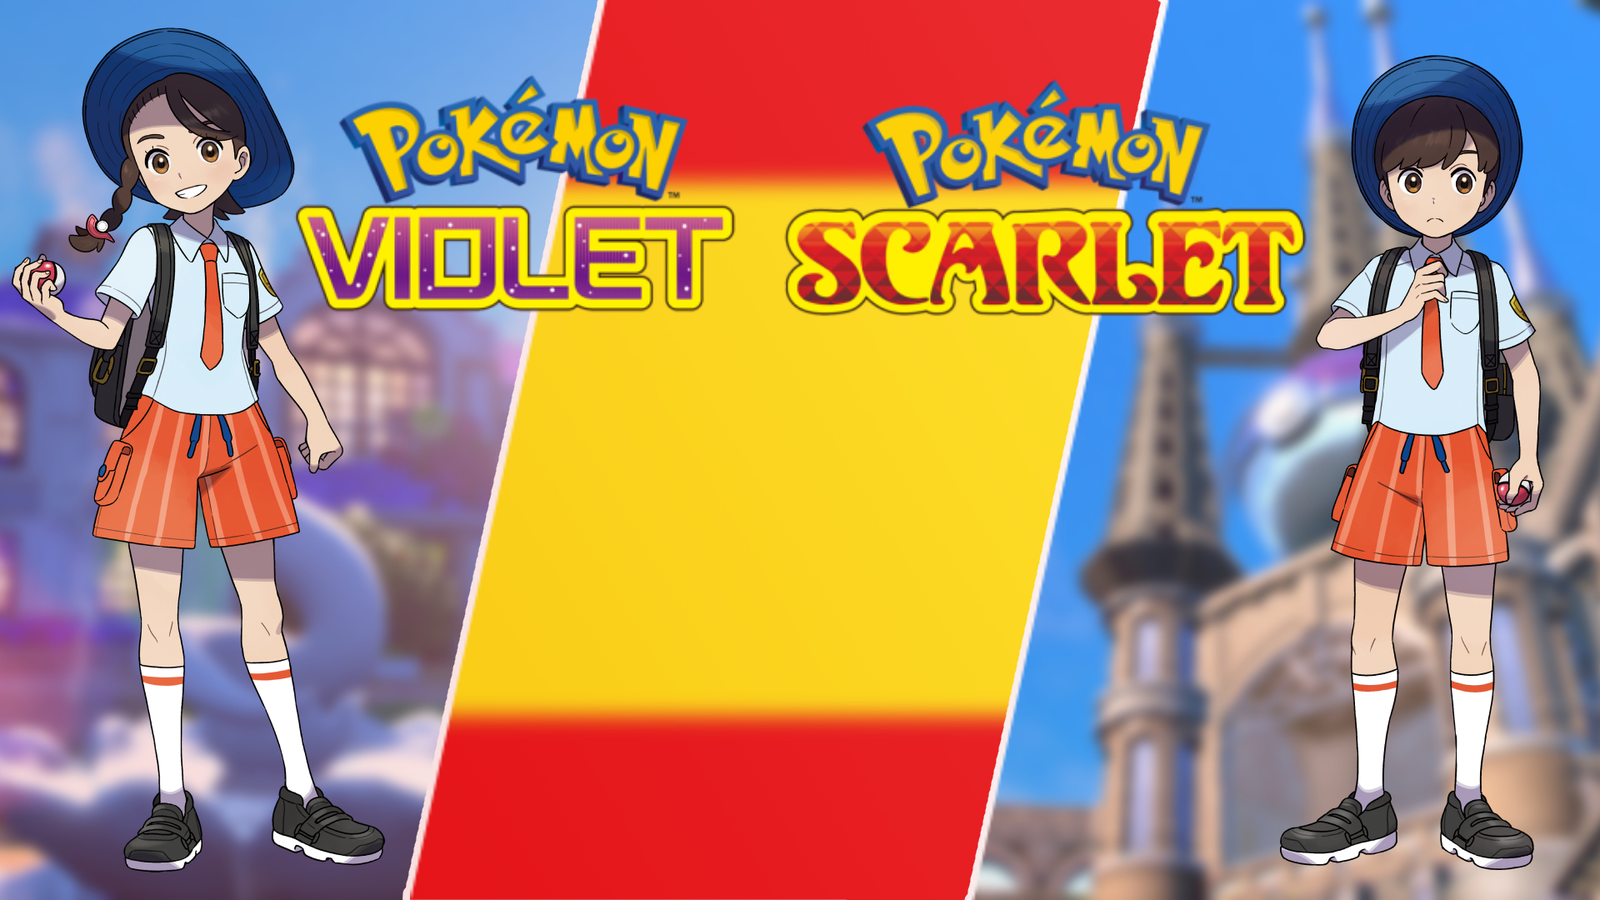 Pokémon Scarlet and Pokémon Violet - Plugged In